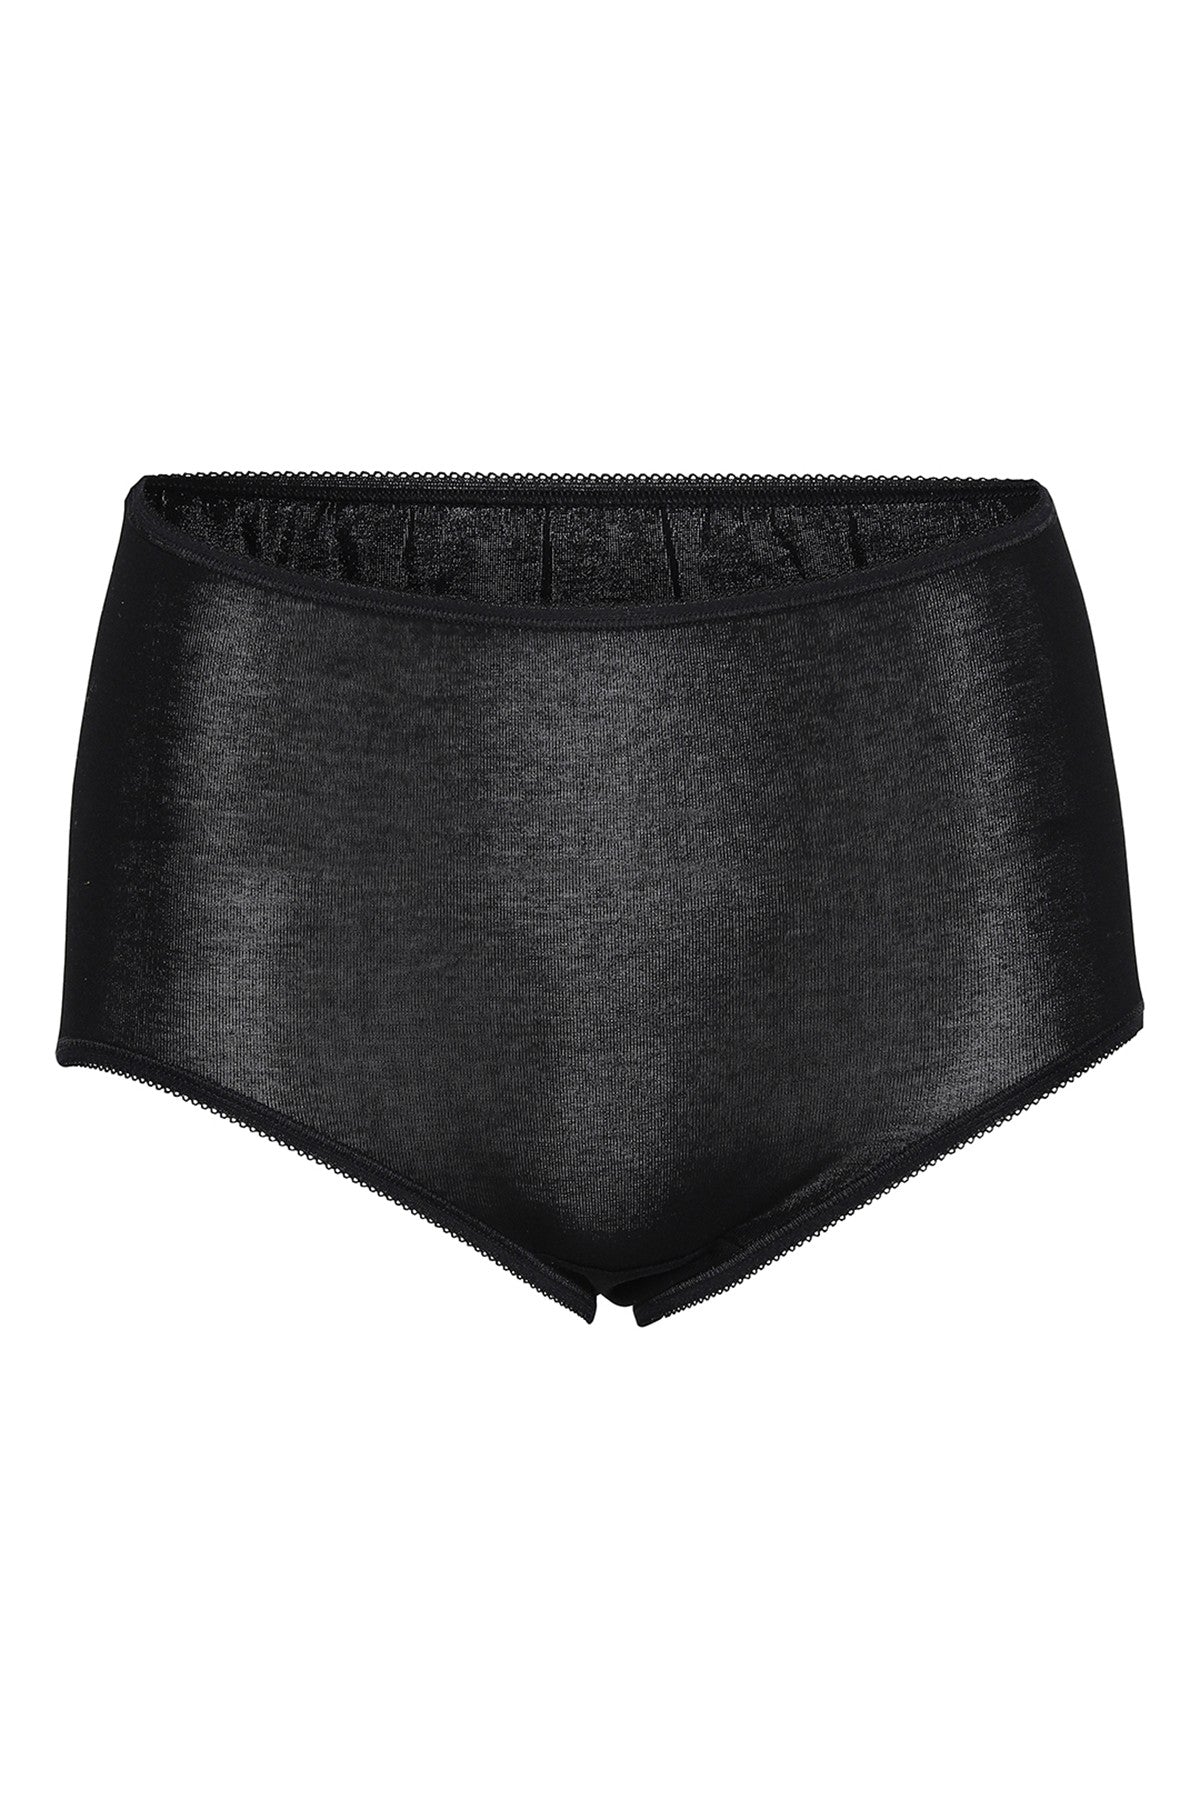 Maxi Boxer Panties - Black